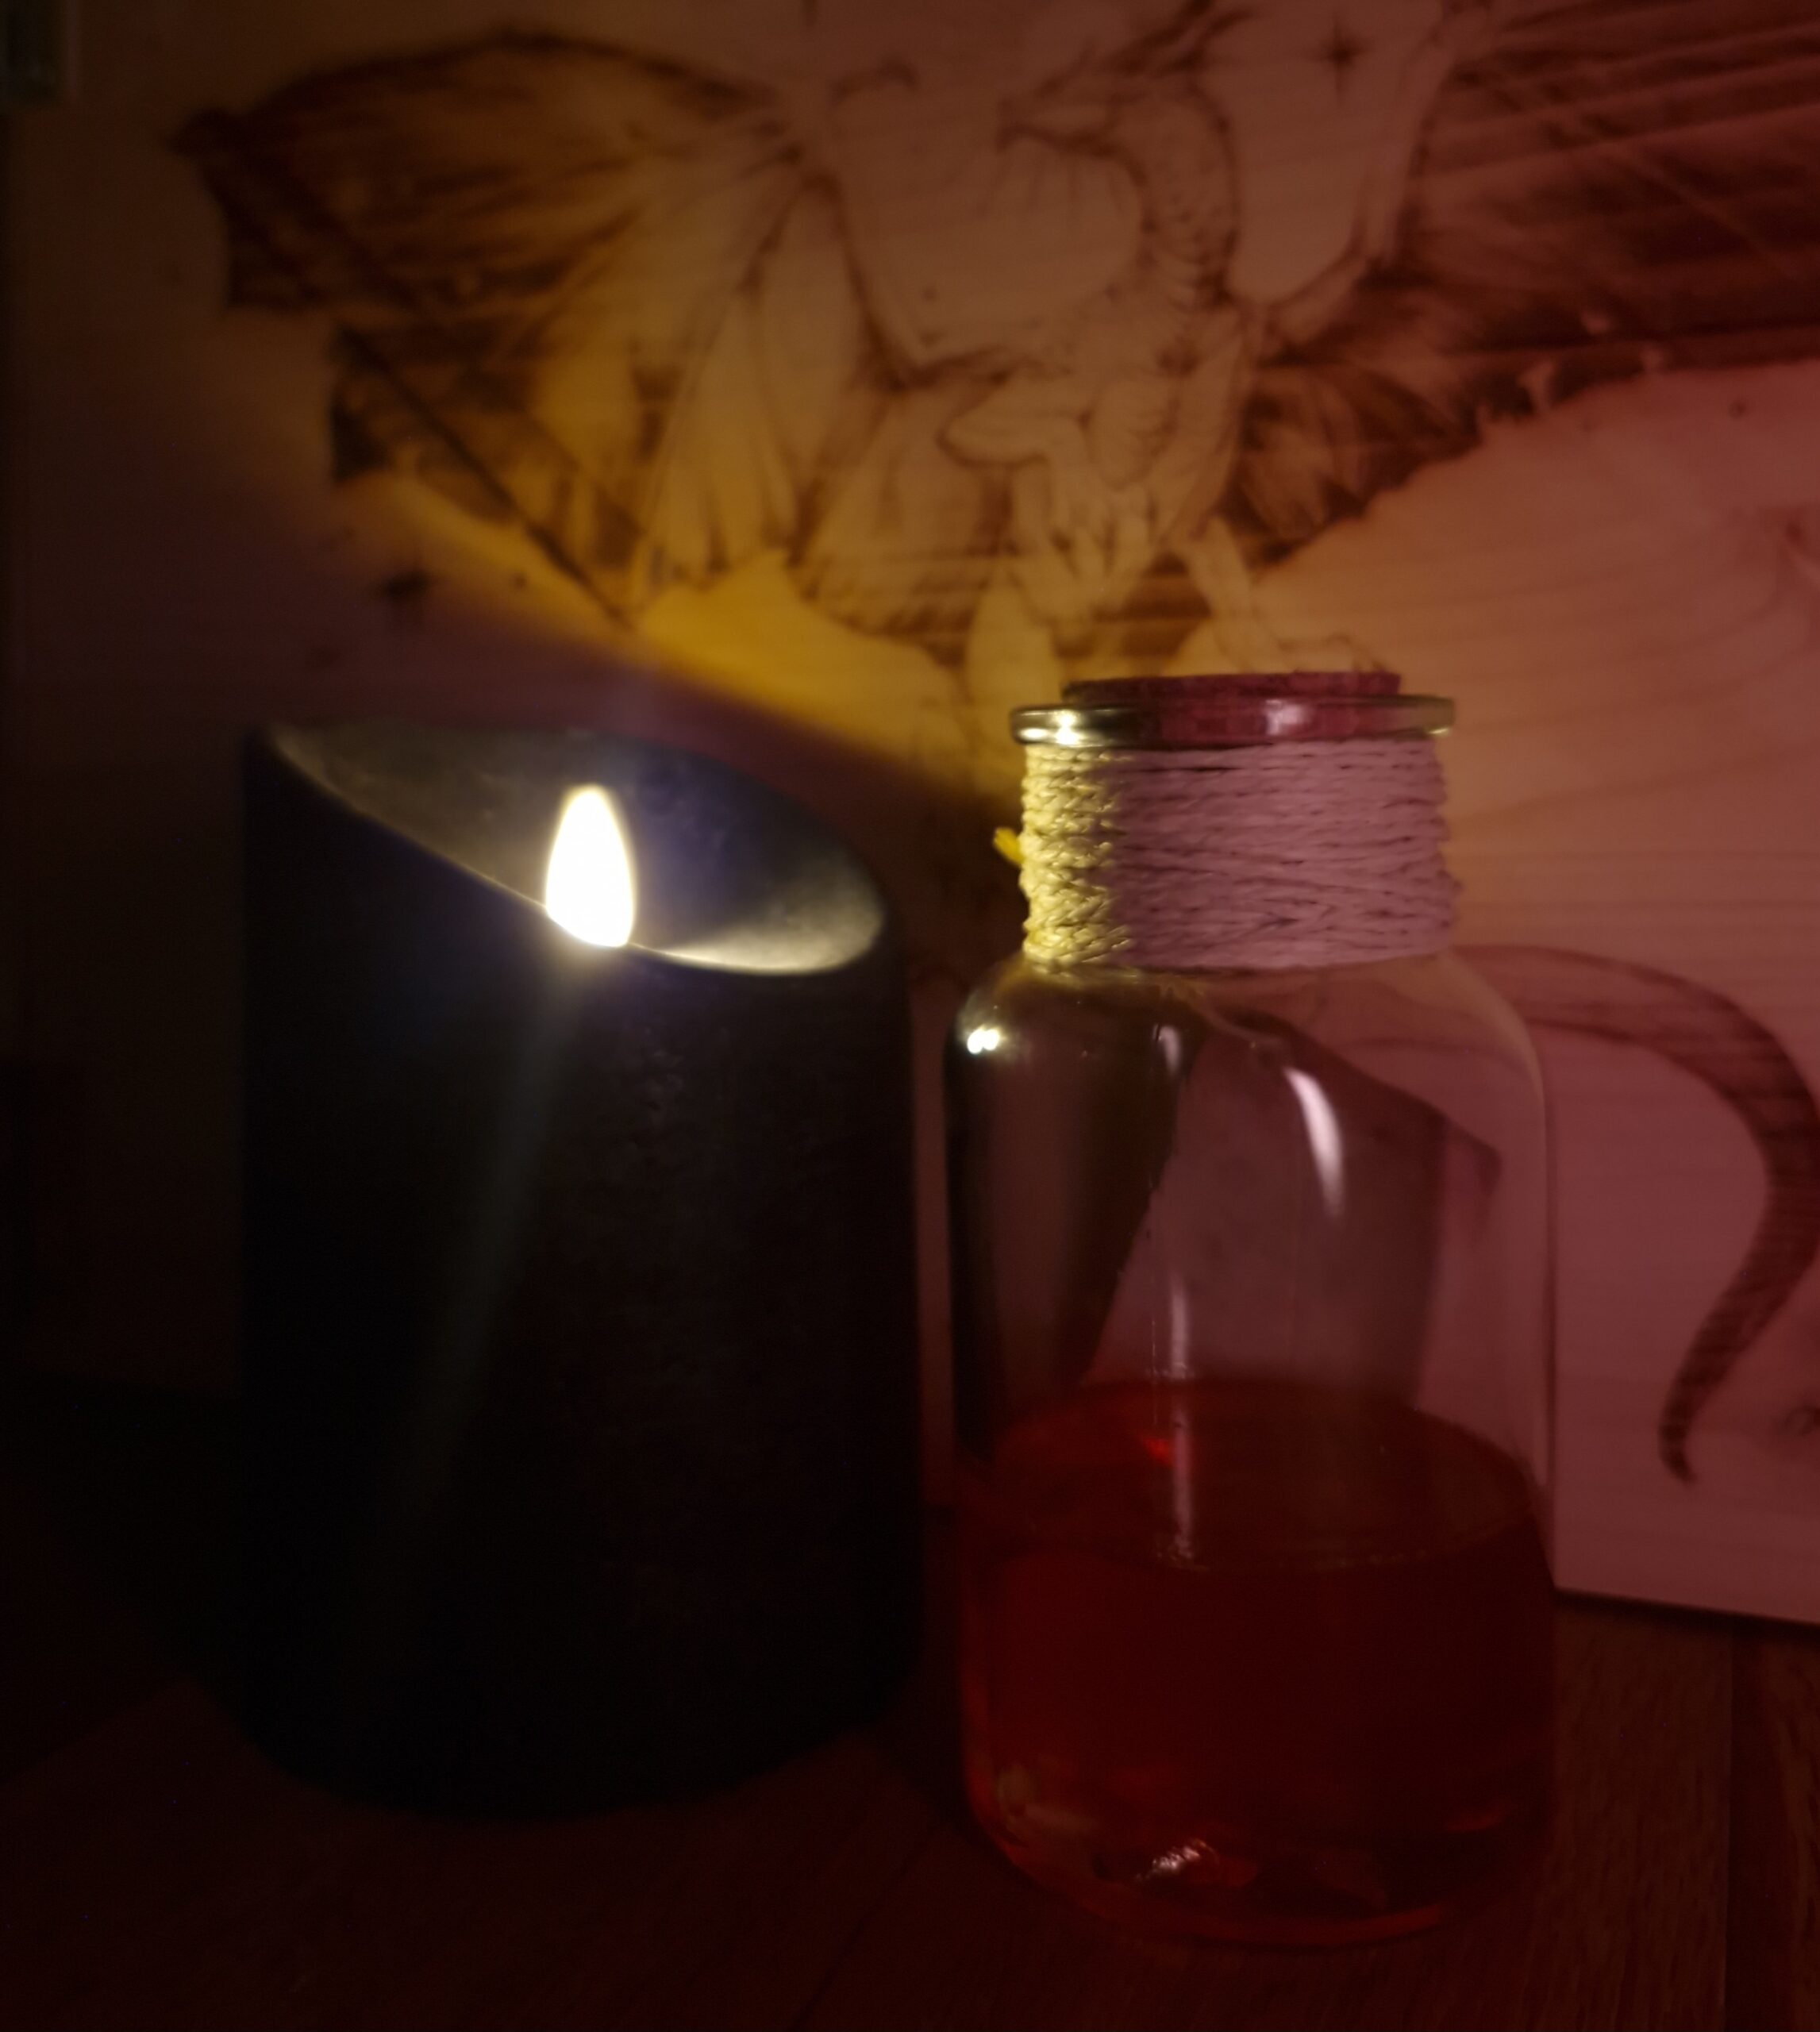 Eine Glasflasche mit Korken und bast um den halb mit einer roten Flüssigkeit darin. Daneben steht eine Schwarzen Kerze. Im Hintergrund ist eine Holzwand mit einem eingebrannten Drachen zu sehen.